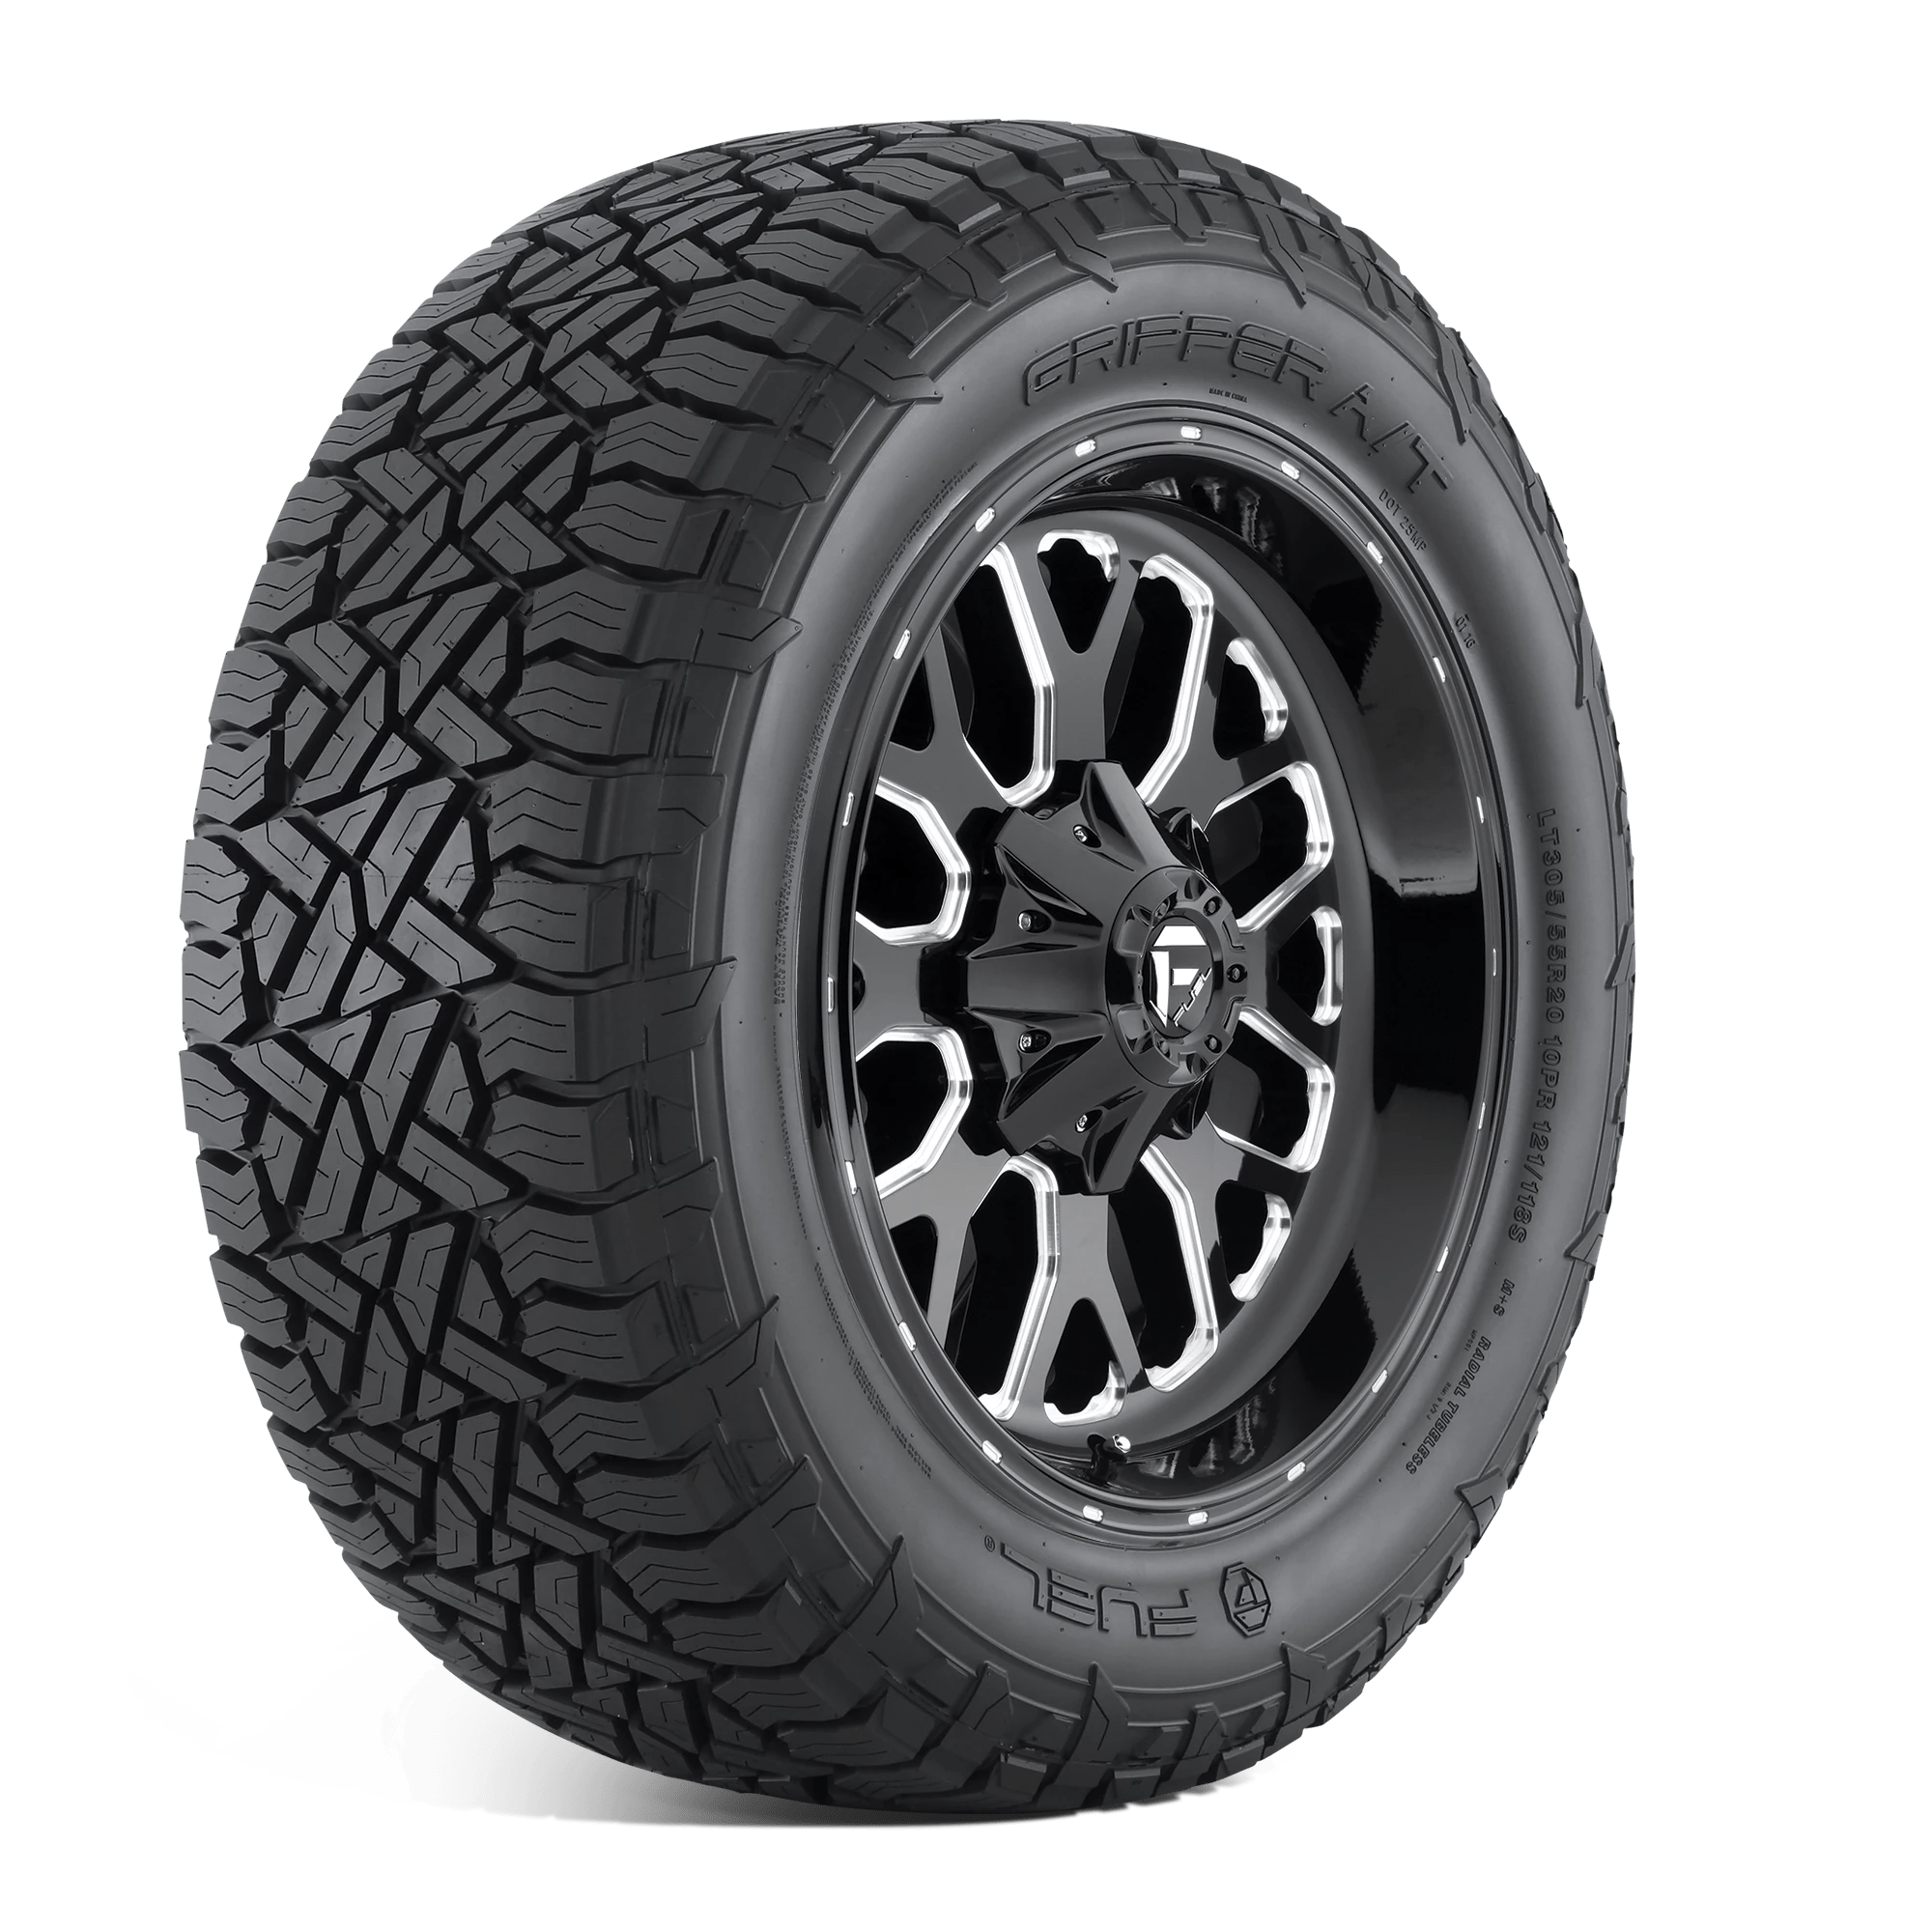 FUEL GRIPPER AT 285/70R17 (32.8X11.5R 17) Tires